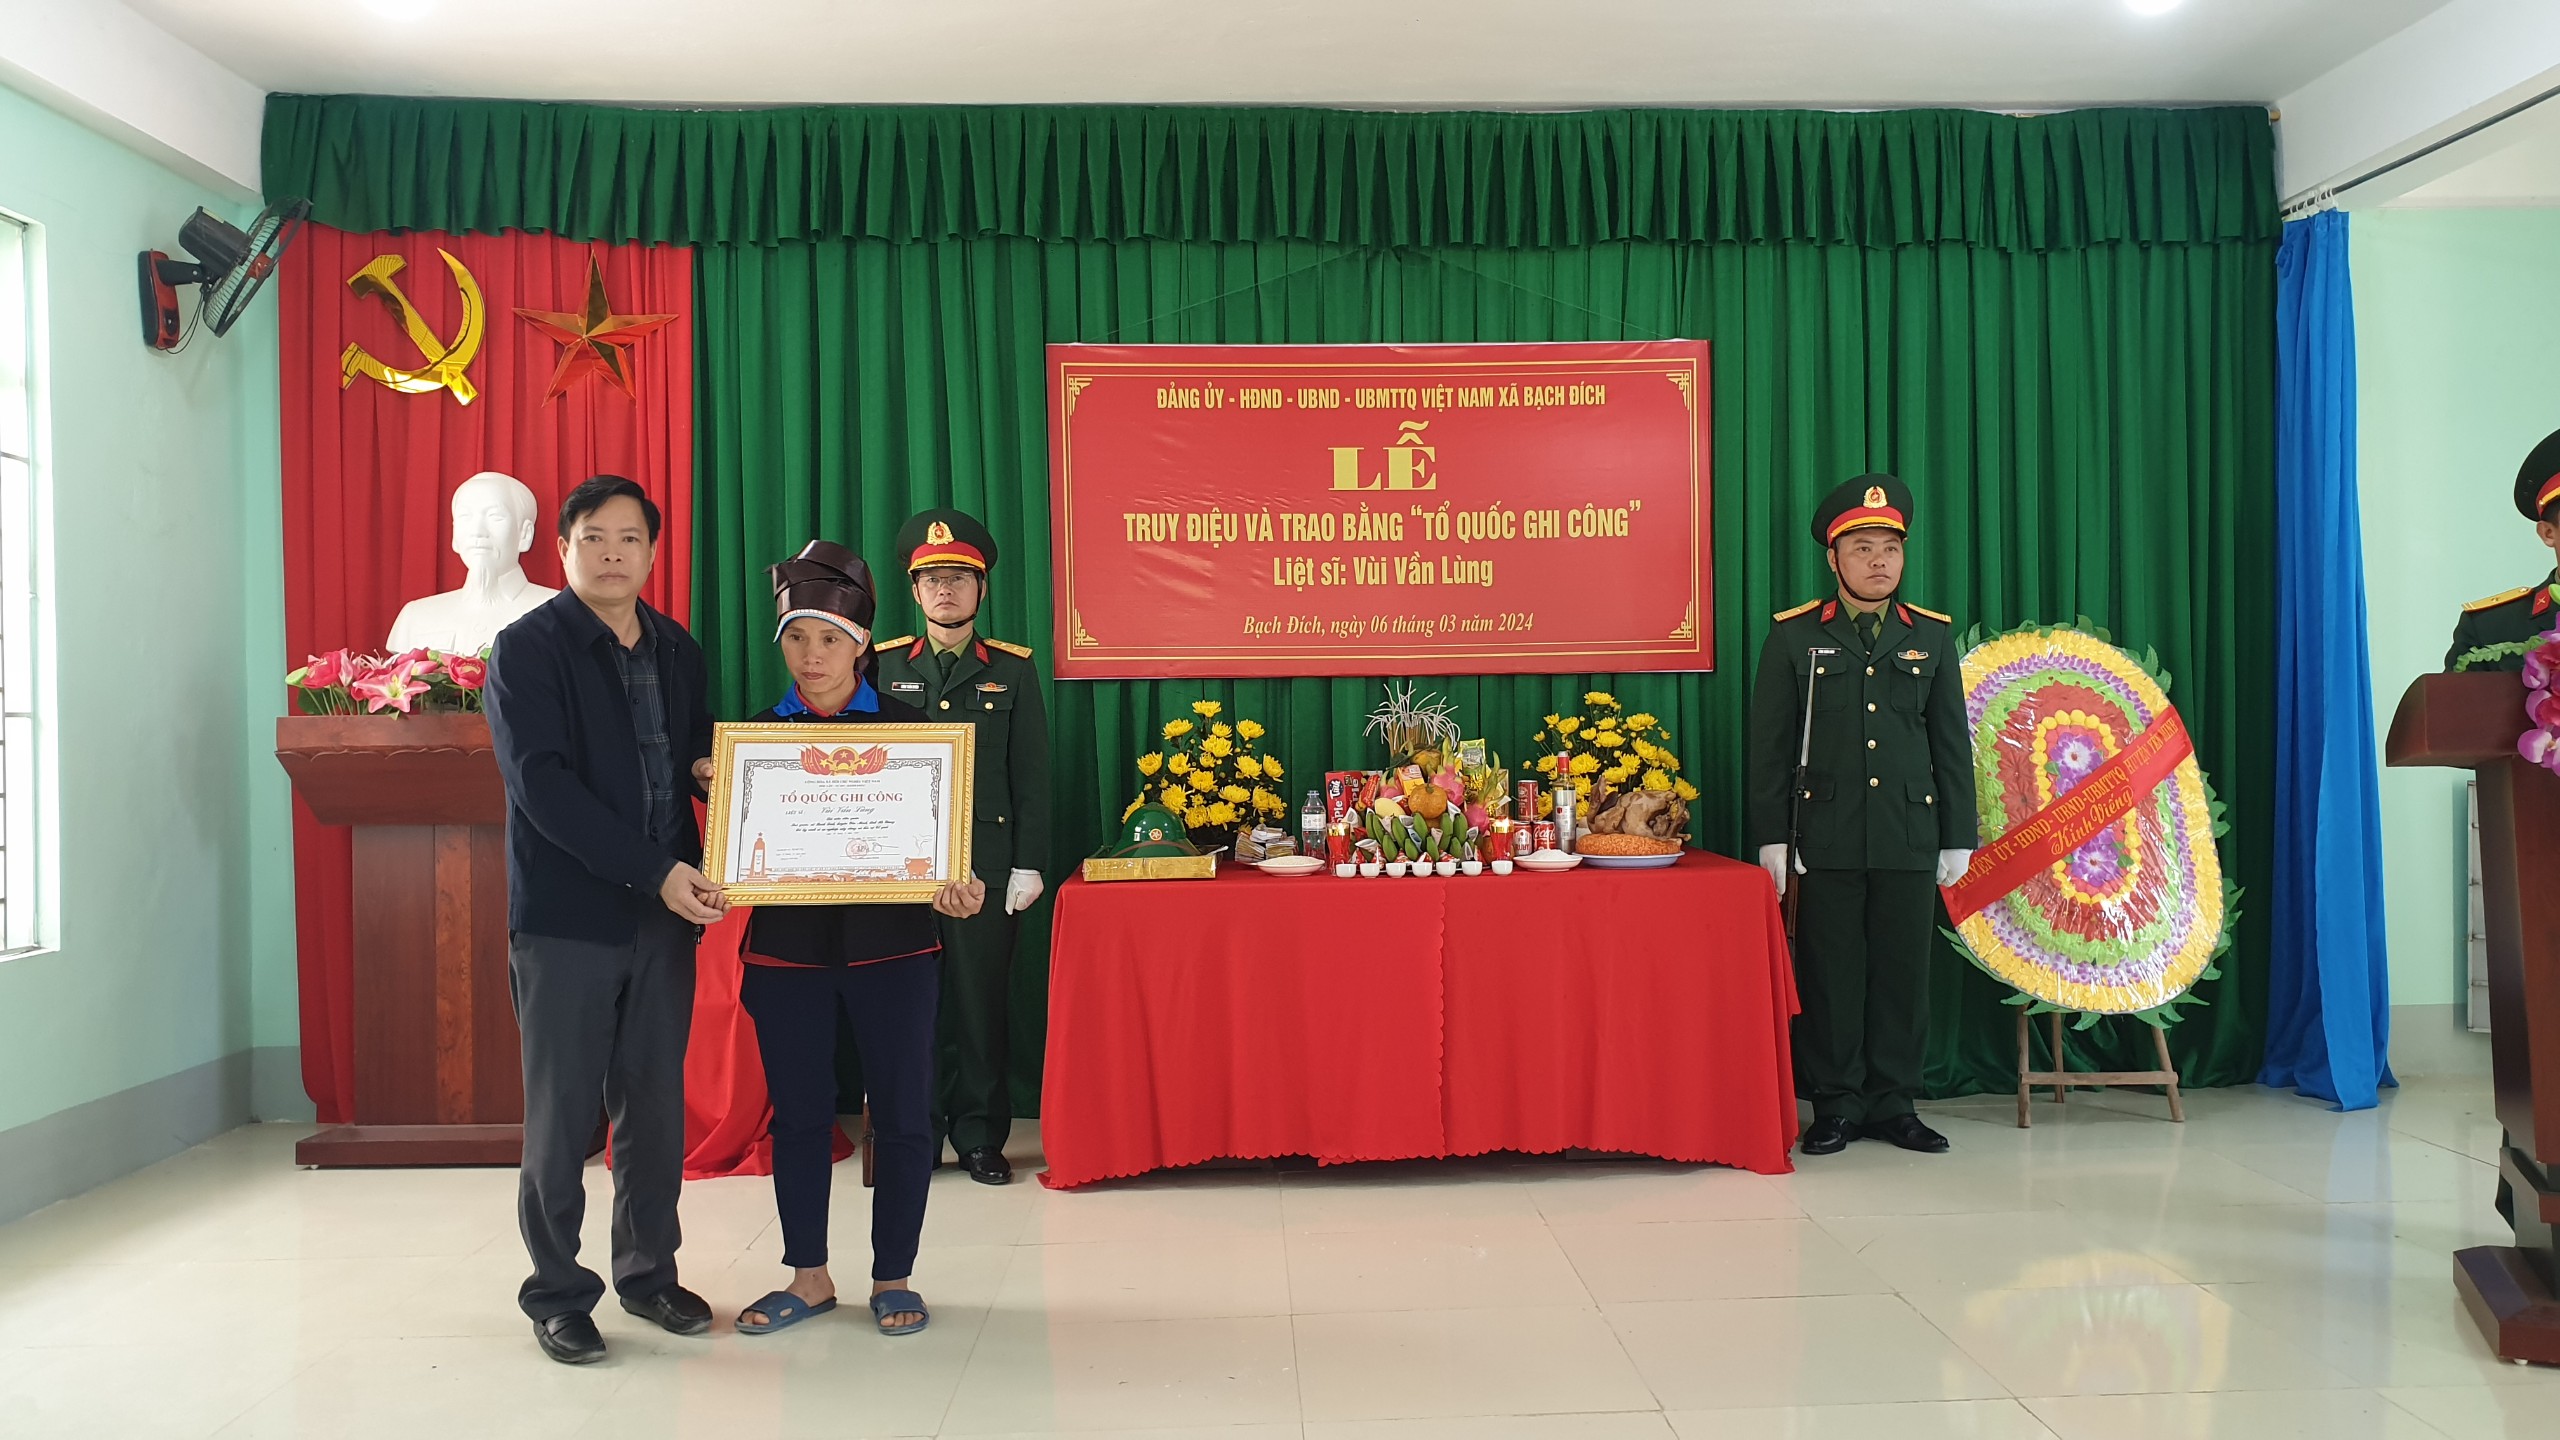 Yên Minh tổ chức Lễ truy điệu và trao bằng Tổ quốc Ghi công cho liệt sỹ Vùi Vần Lùng